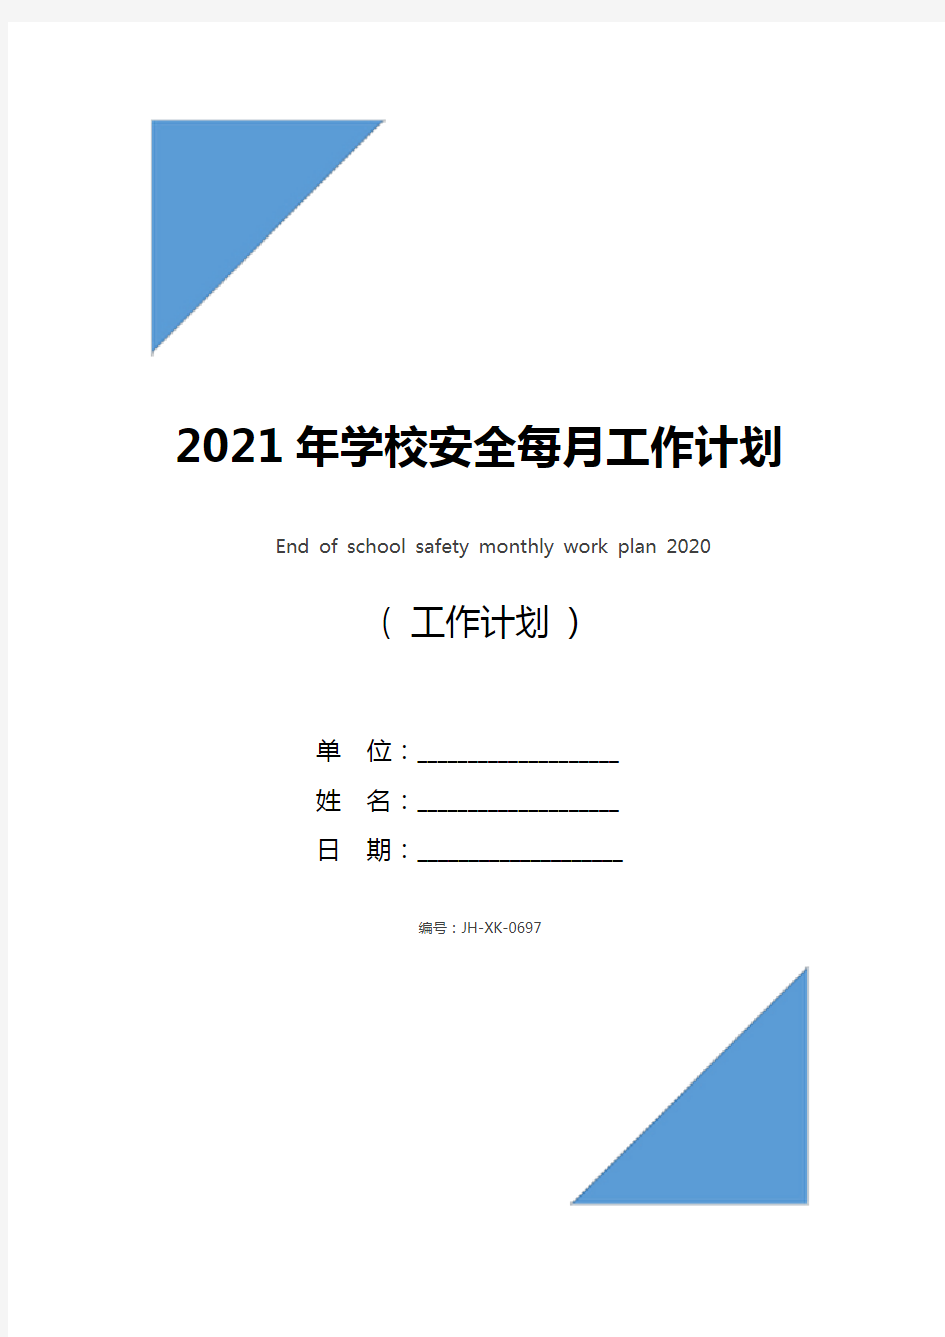 2021年学校安全每月工作计划结尾(最新版)